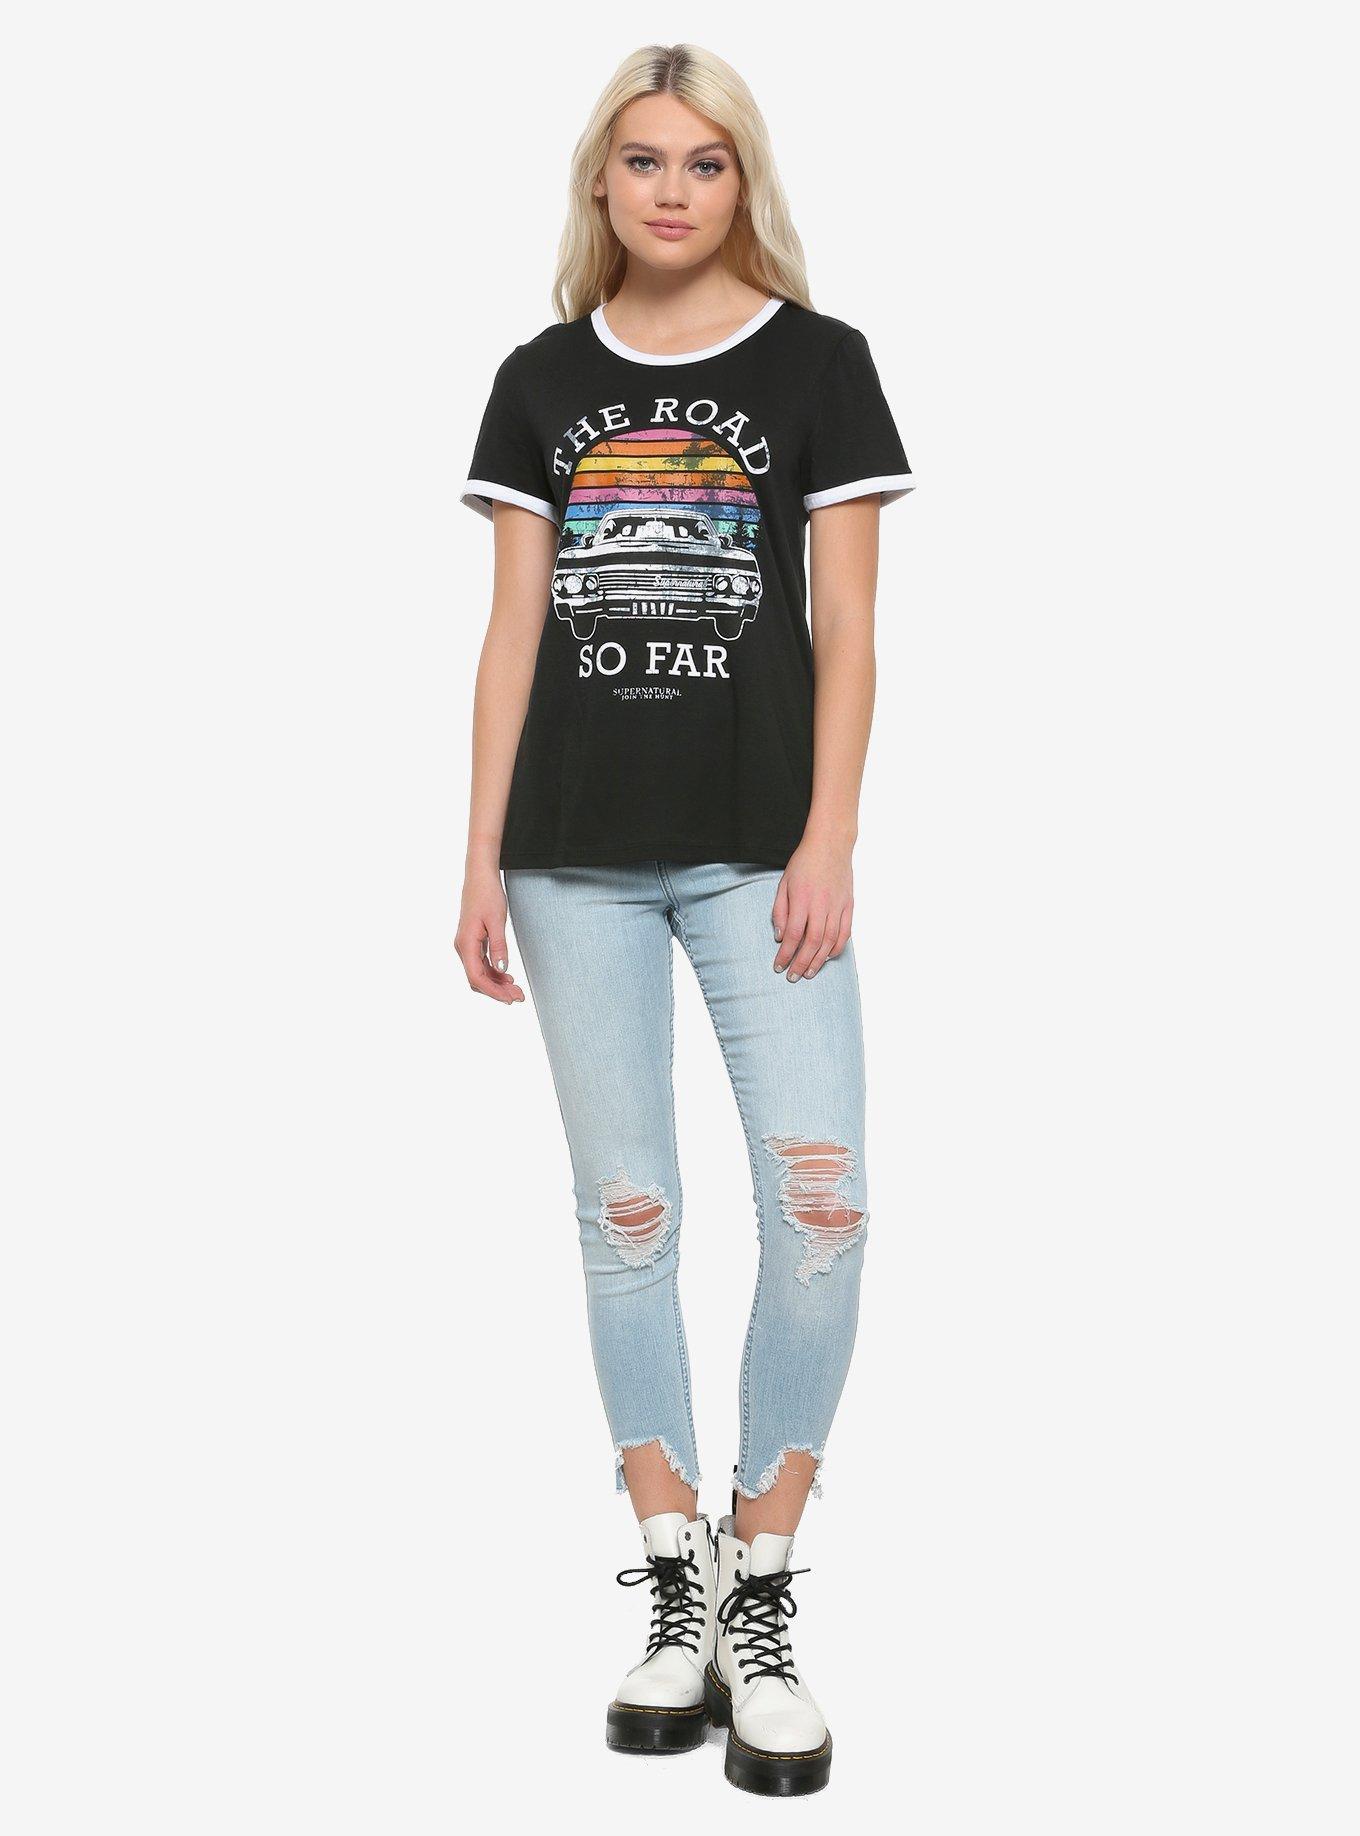 Supernatural Sunset Road So Far Girls Ringer T-Shirt, , alternate